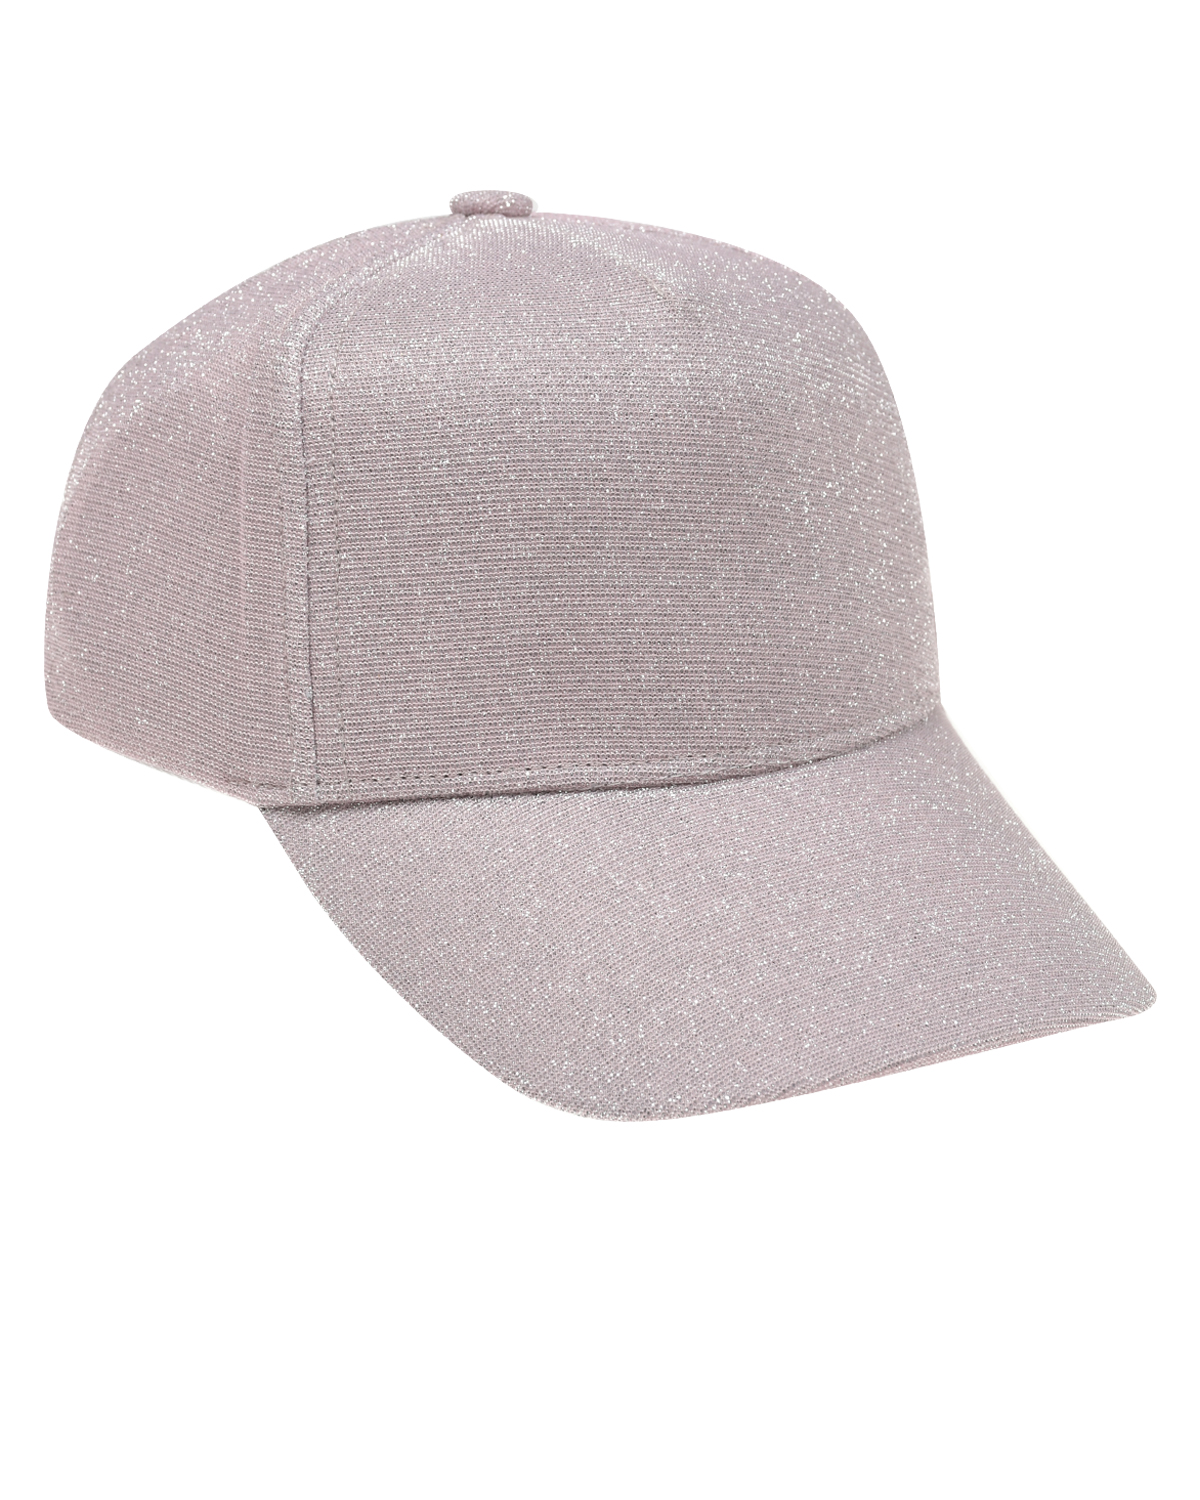 Светло-розовая кепка с глиттером Jan&Sofie, размер 56, цвет розовый